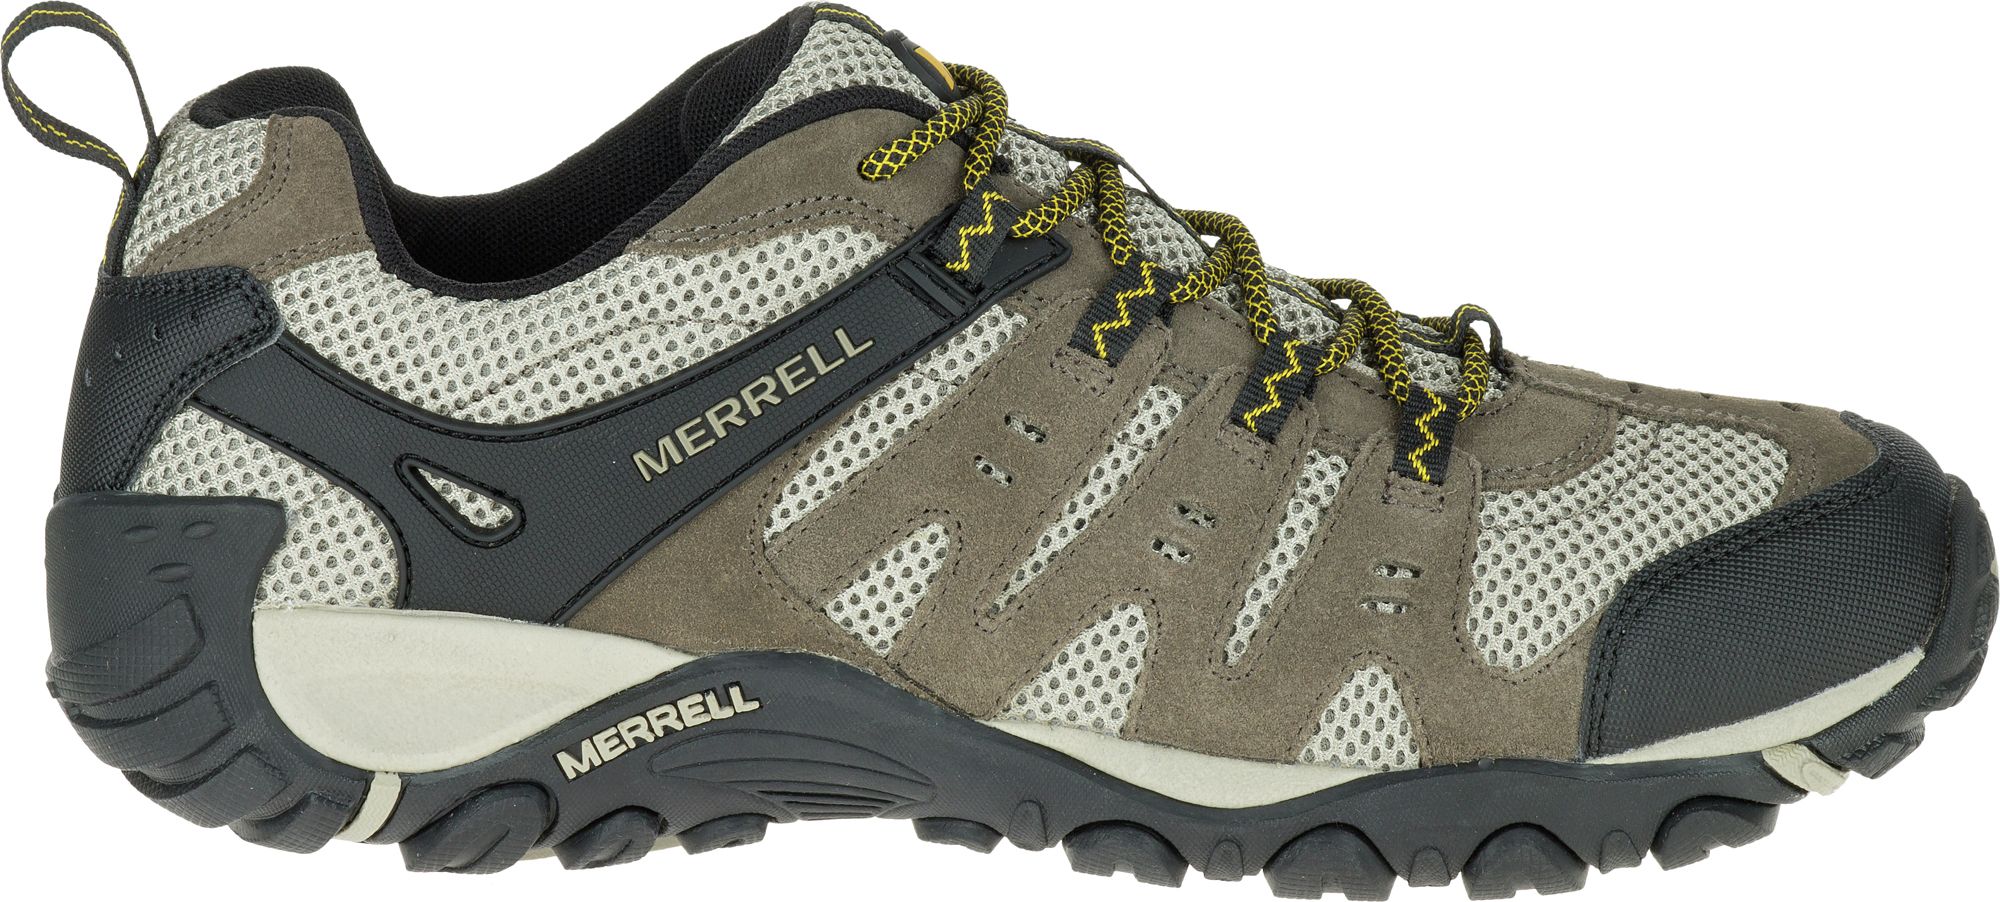 merrell summer hiking boots